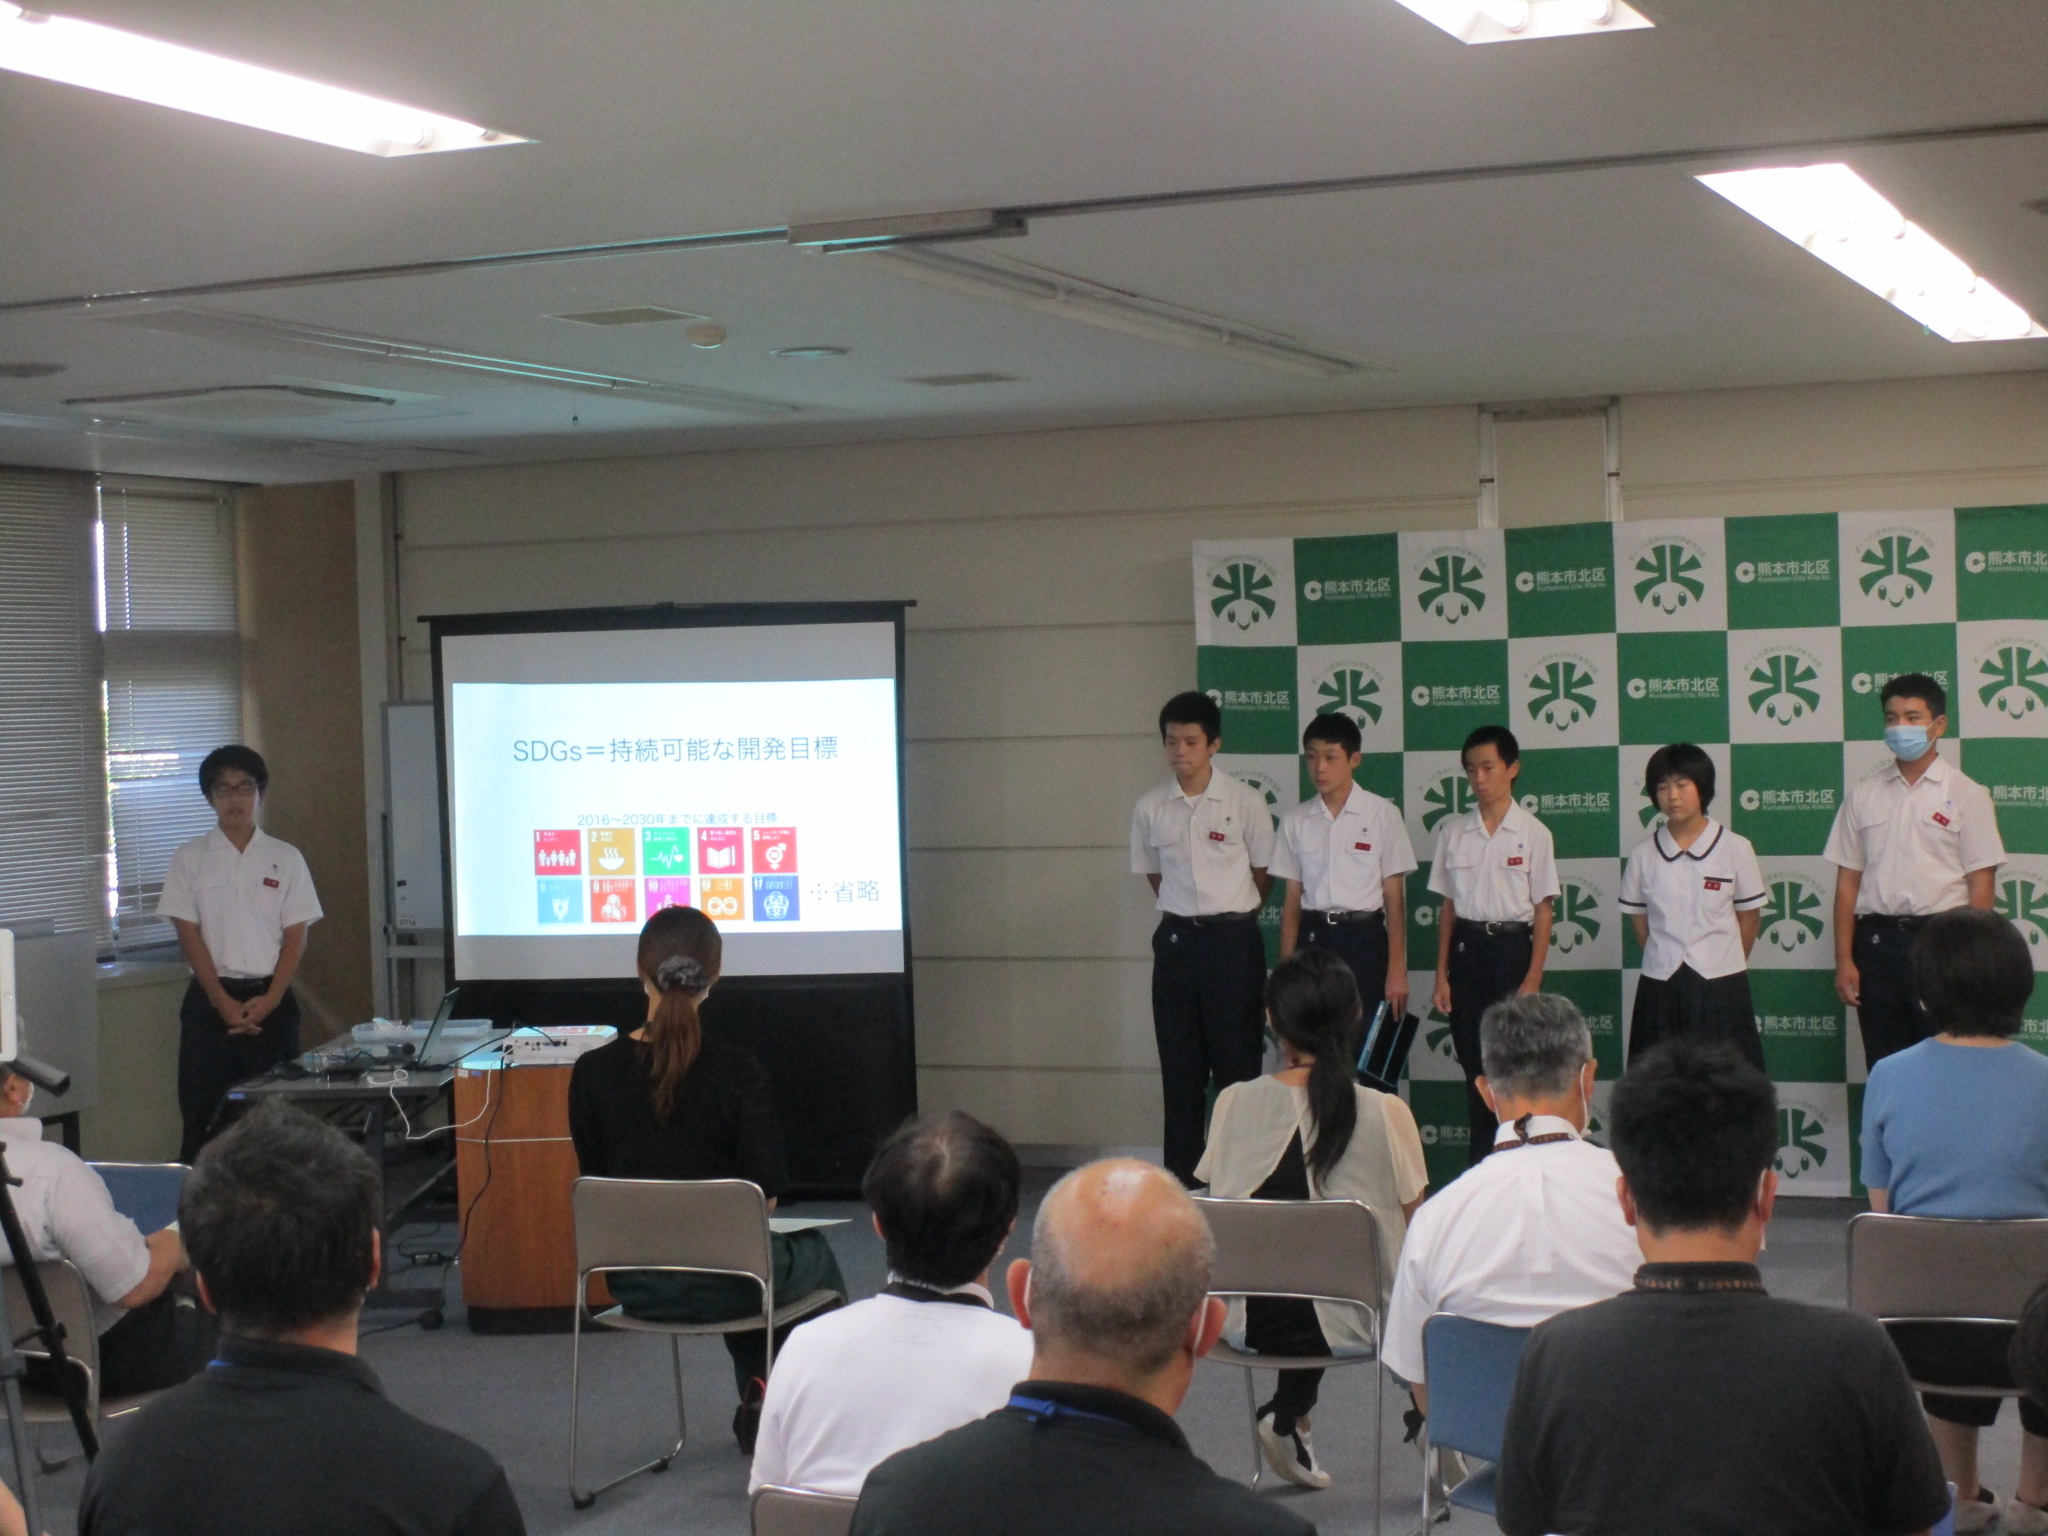 北部中学校によるsdgs発表会が行われました 北区ホームページtop 熊本市ホームページ